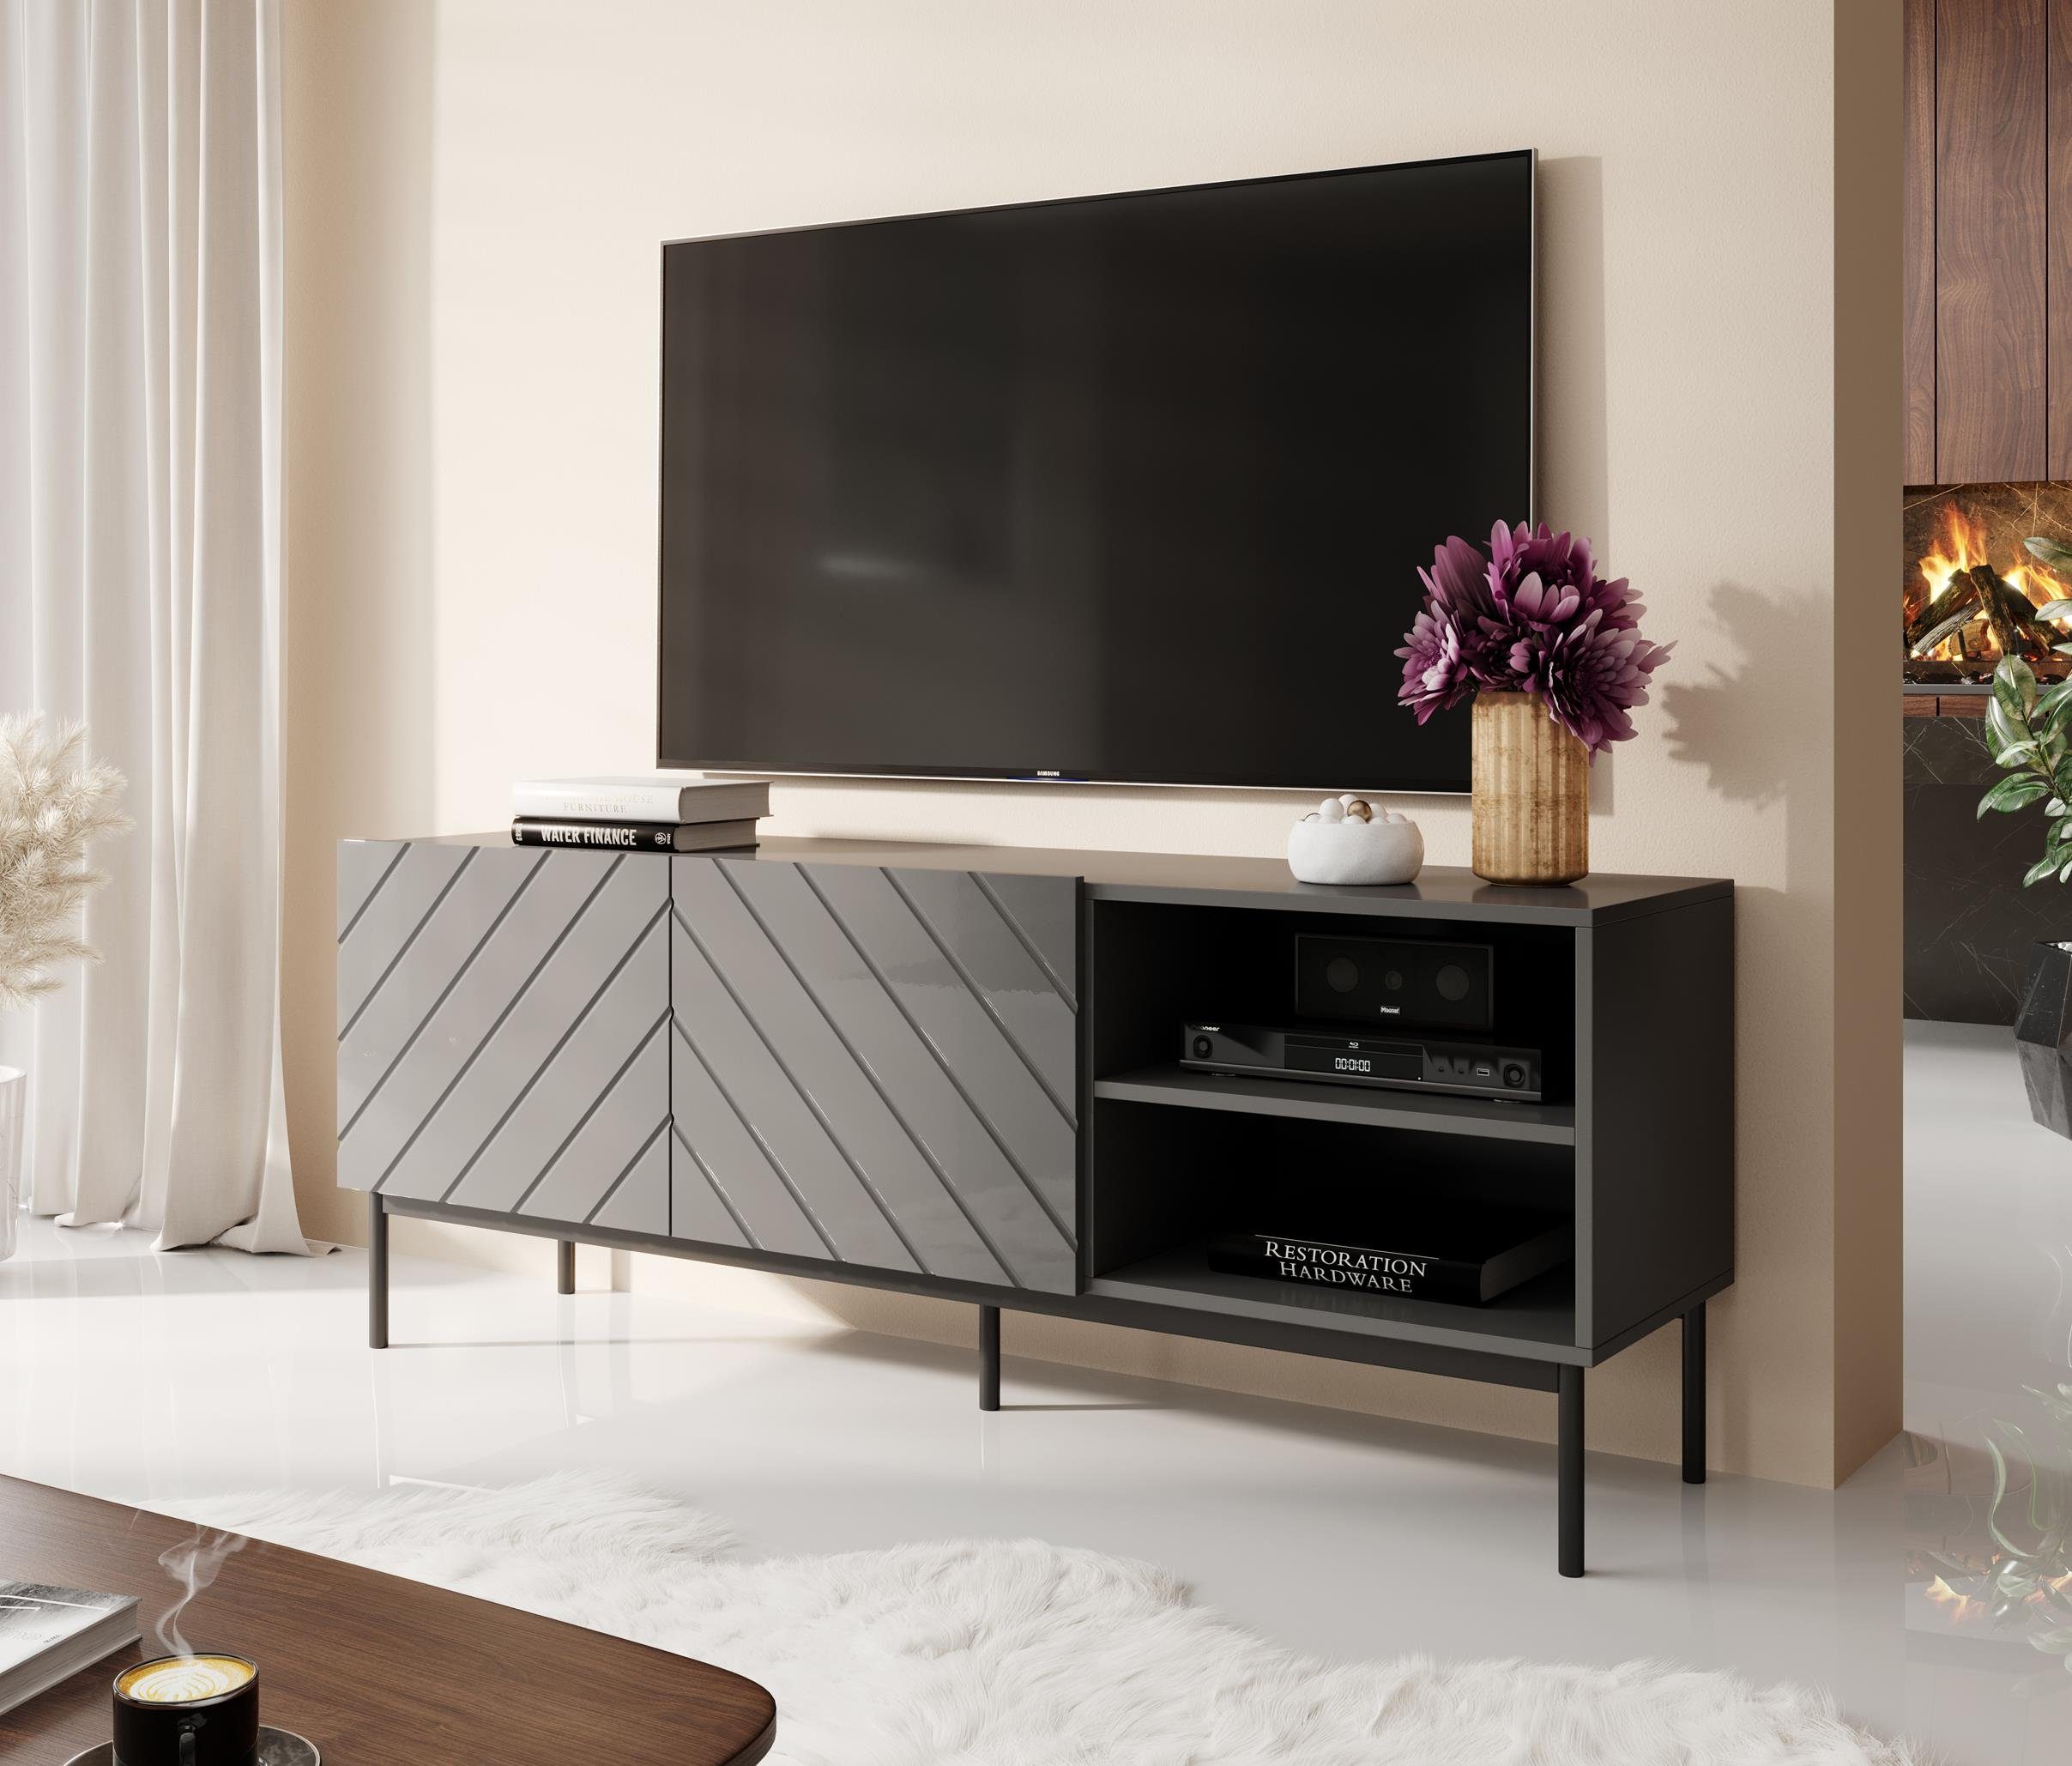 Furnix TV-Schrank x 150/200 H52 mit Glanz 200 cm Ziertüren B150 bzw. ODELIA T41,6 GESTELL Fernsehschrank Graphit x